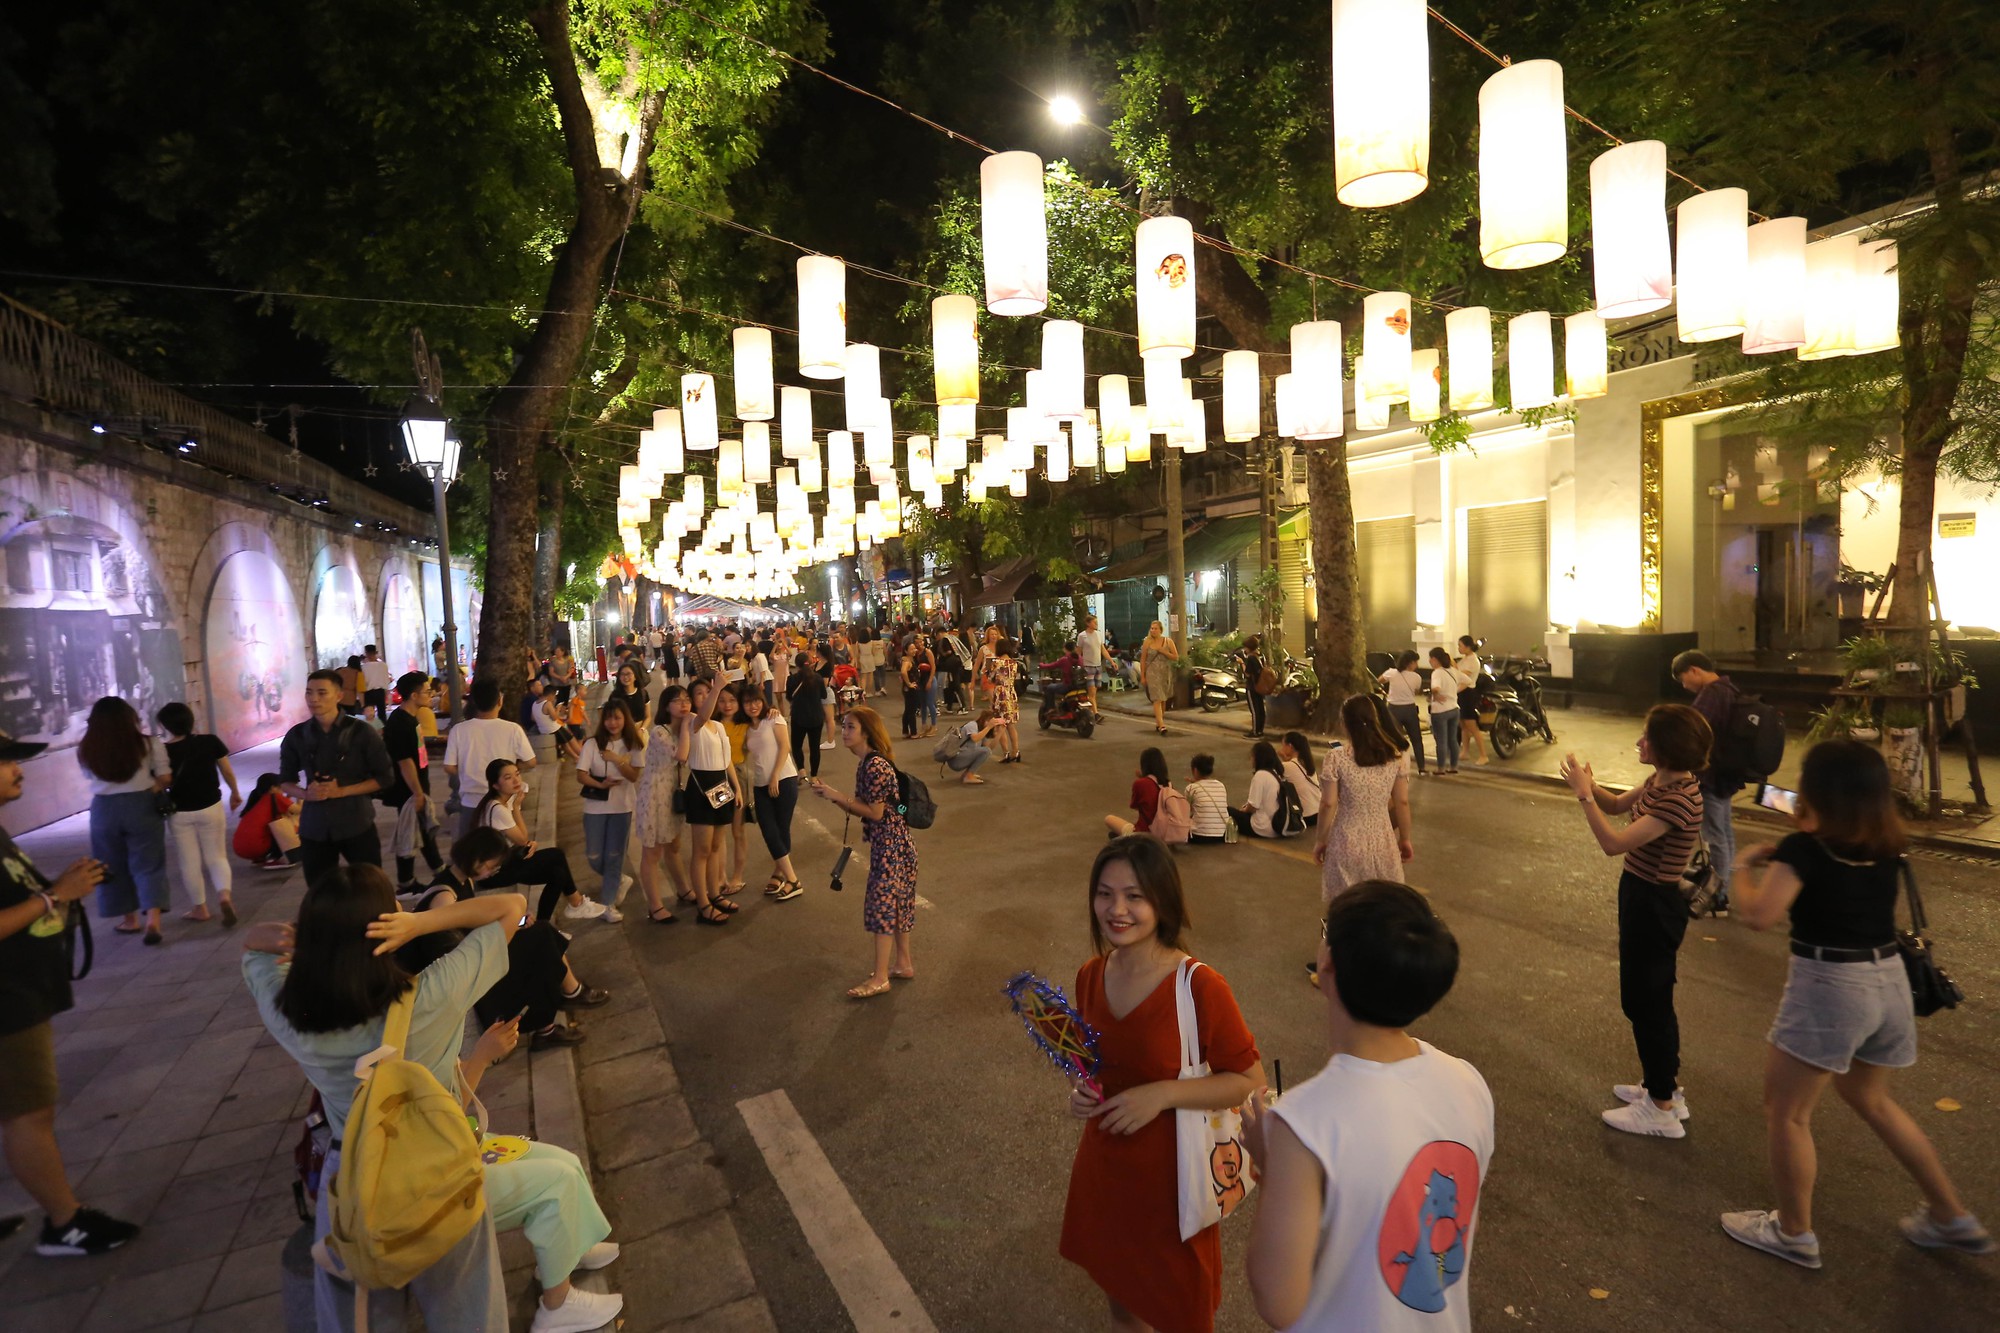 Hà Nội là địa điểm lý tưởng để thưởng thức một Tết Trung thu truyền thống. Hãy ngắm nhìn bức ảnh đầy màu sắc về những chiếc đèn lồng đẹp phơi phới trên phố Bích Hoạ và các con đường khác, mang đến một không khí rất đặc biệt của ngày Tết.